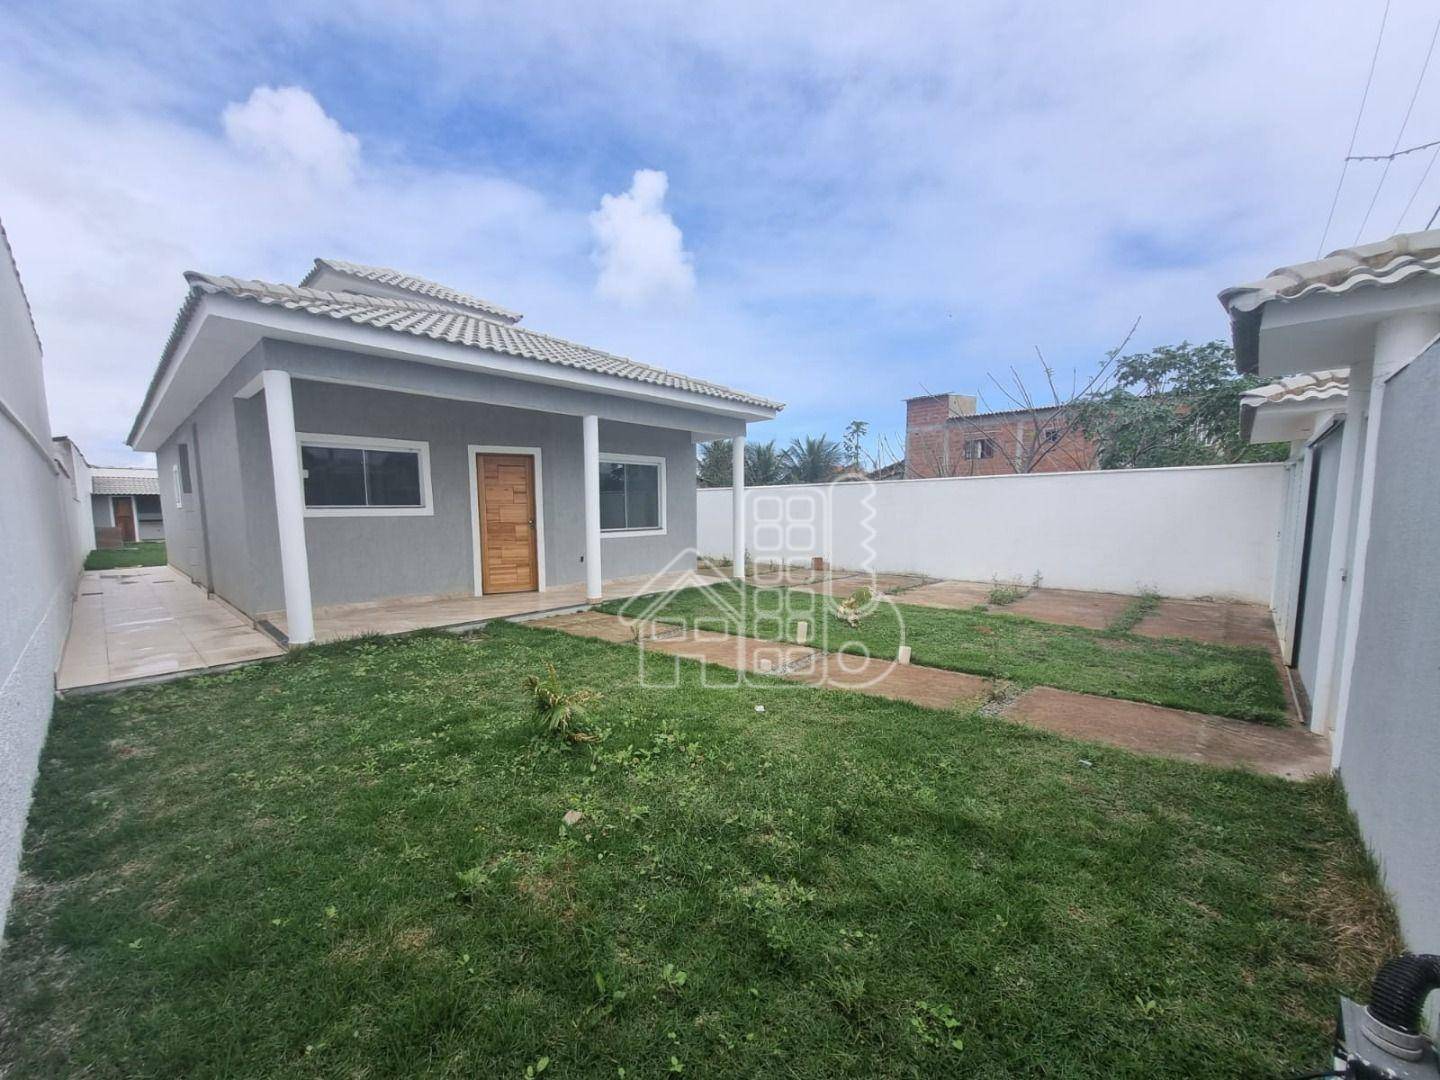 Casa com 3 dormitórios à venda, 100 m² por R$ 580.000,00 - Jardim Atlântico Central (Itaipuaçu) - Maricá/RJ